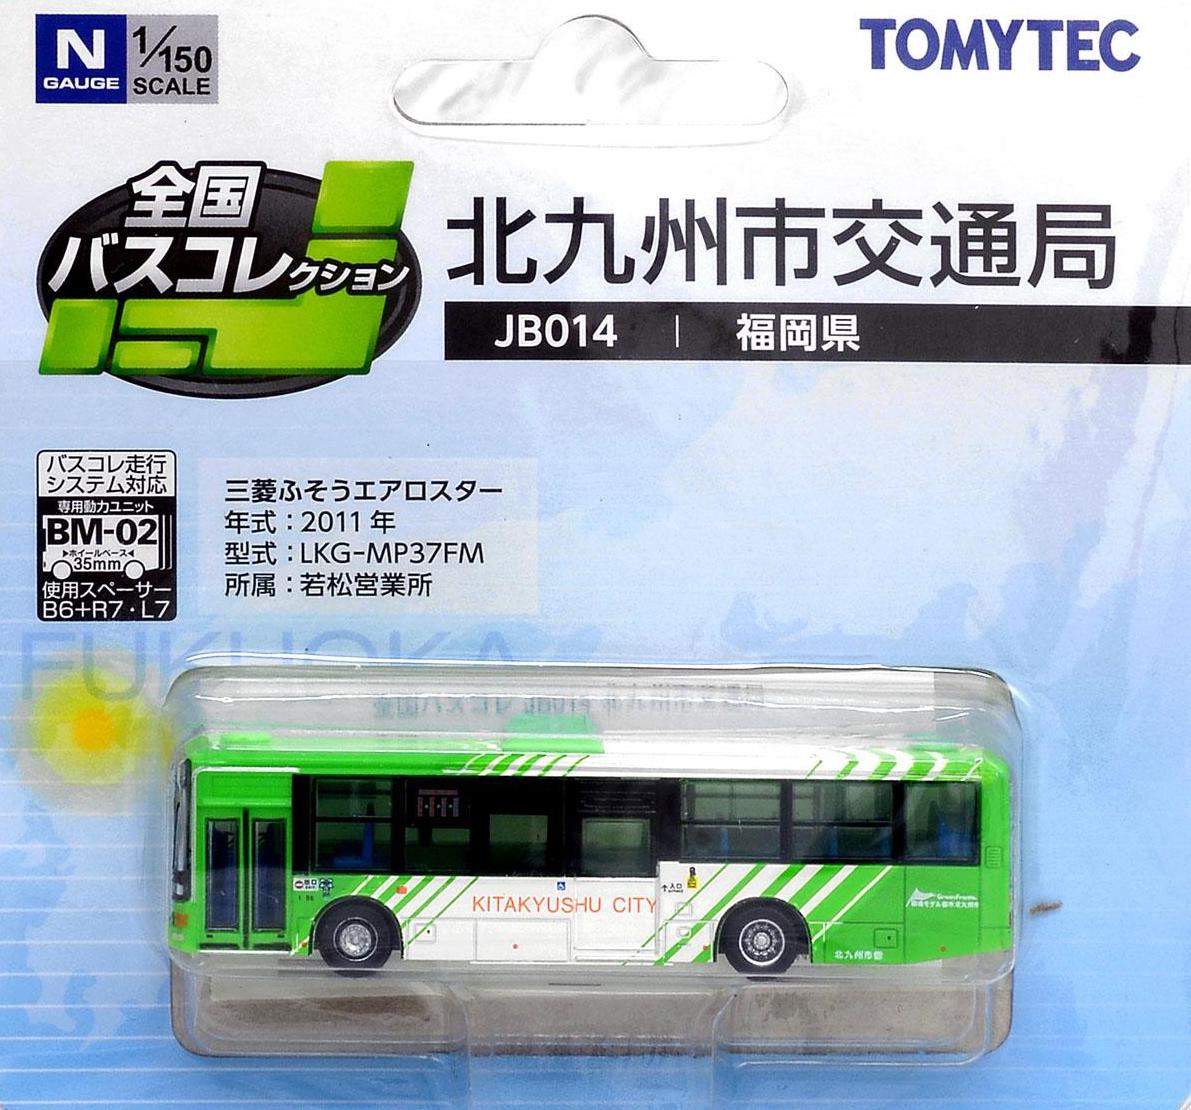 255161 The All Japan Bus Collection [JB014] Kitakyushu City Tran